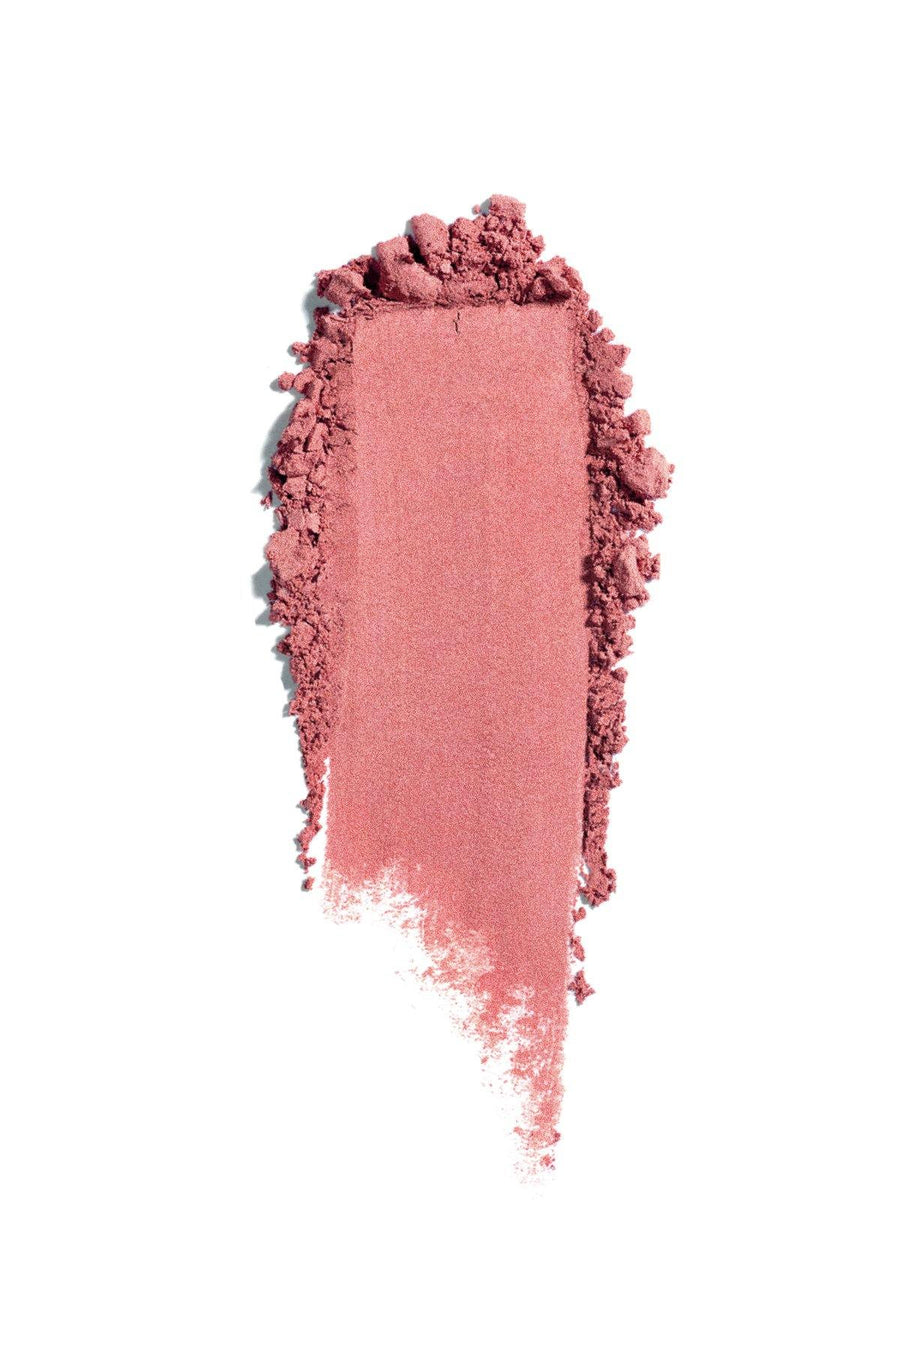 Mineral Blush #8 - Sweet Kiss - Blend Mineral Cosmetics